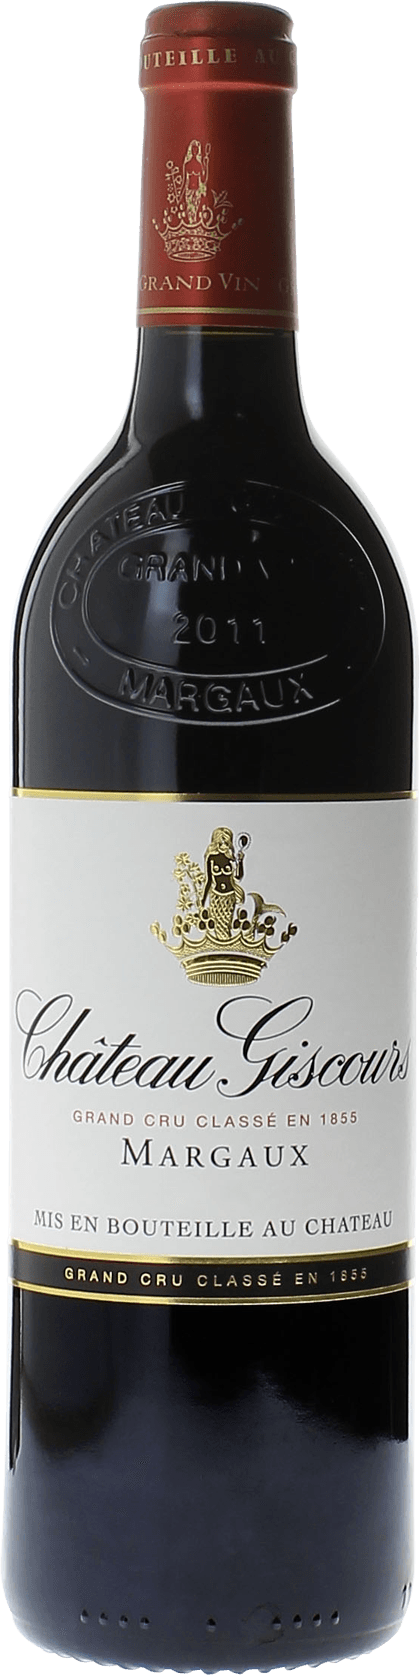 Giscours 1981 3me Grand cru class Margaux, Bordeaux rouge